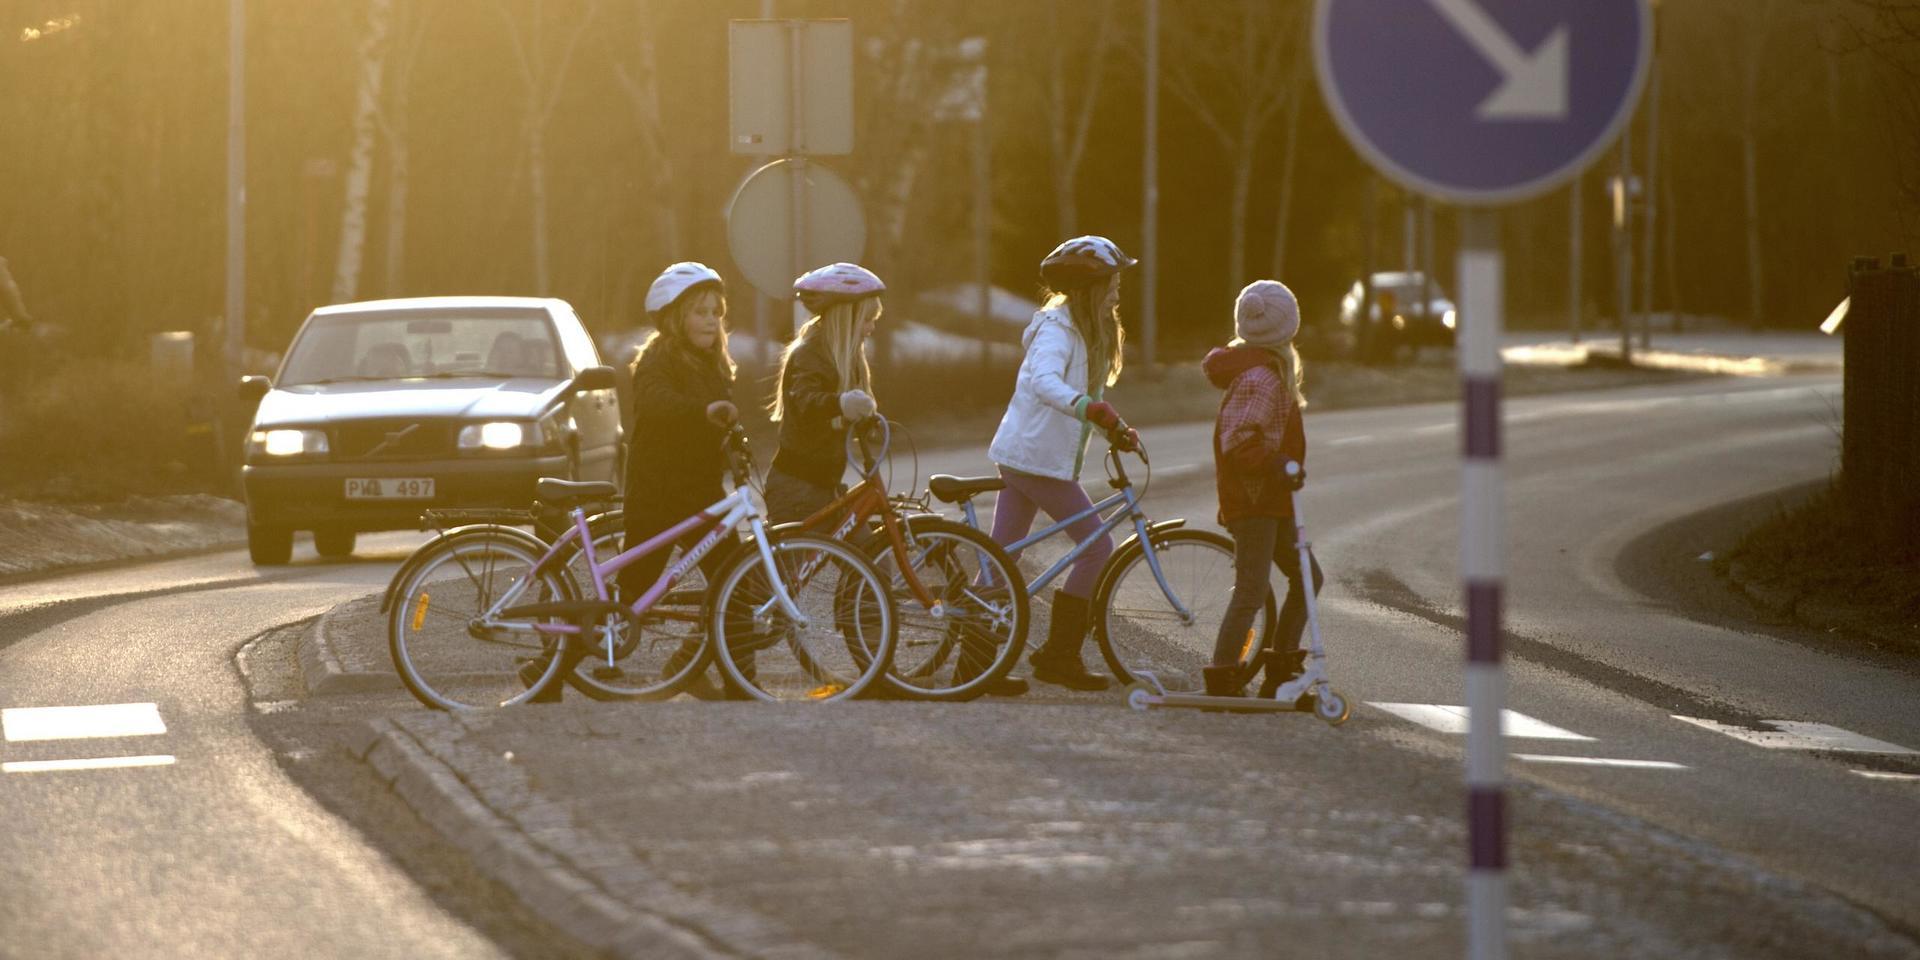 Nationalföreningen för trafiksäkerhetens främjande, NTF, har under flera decennier inpräntat i landets skolor och föräldrar att barn ska vara 12 år för att kunna cykla själva till skolan. Därför stoppar i dag skolor yngre elever från att cykla. Detta är förlegat. Barns trafikmognad är individuell och trafikmiljön längs skolvägen avgör när man kan cykla, skriver debattörerna.